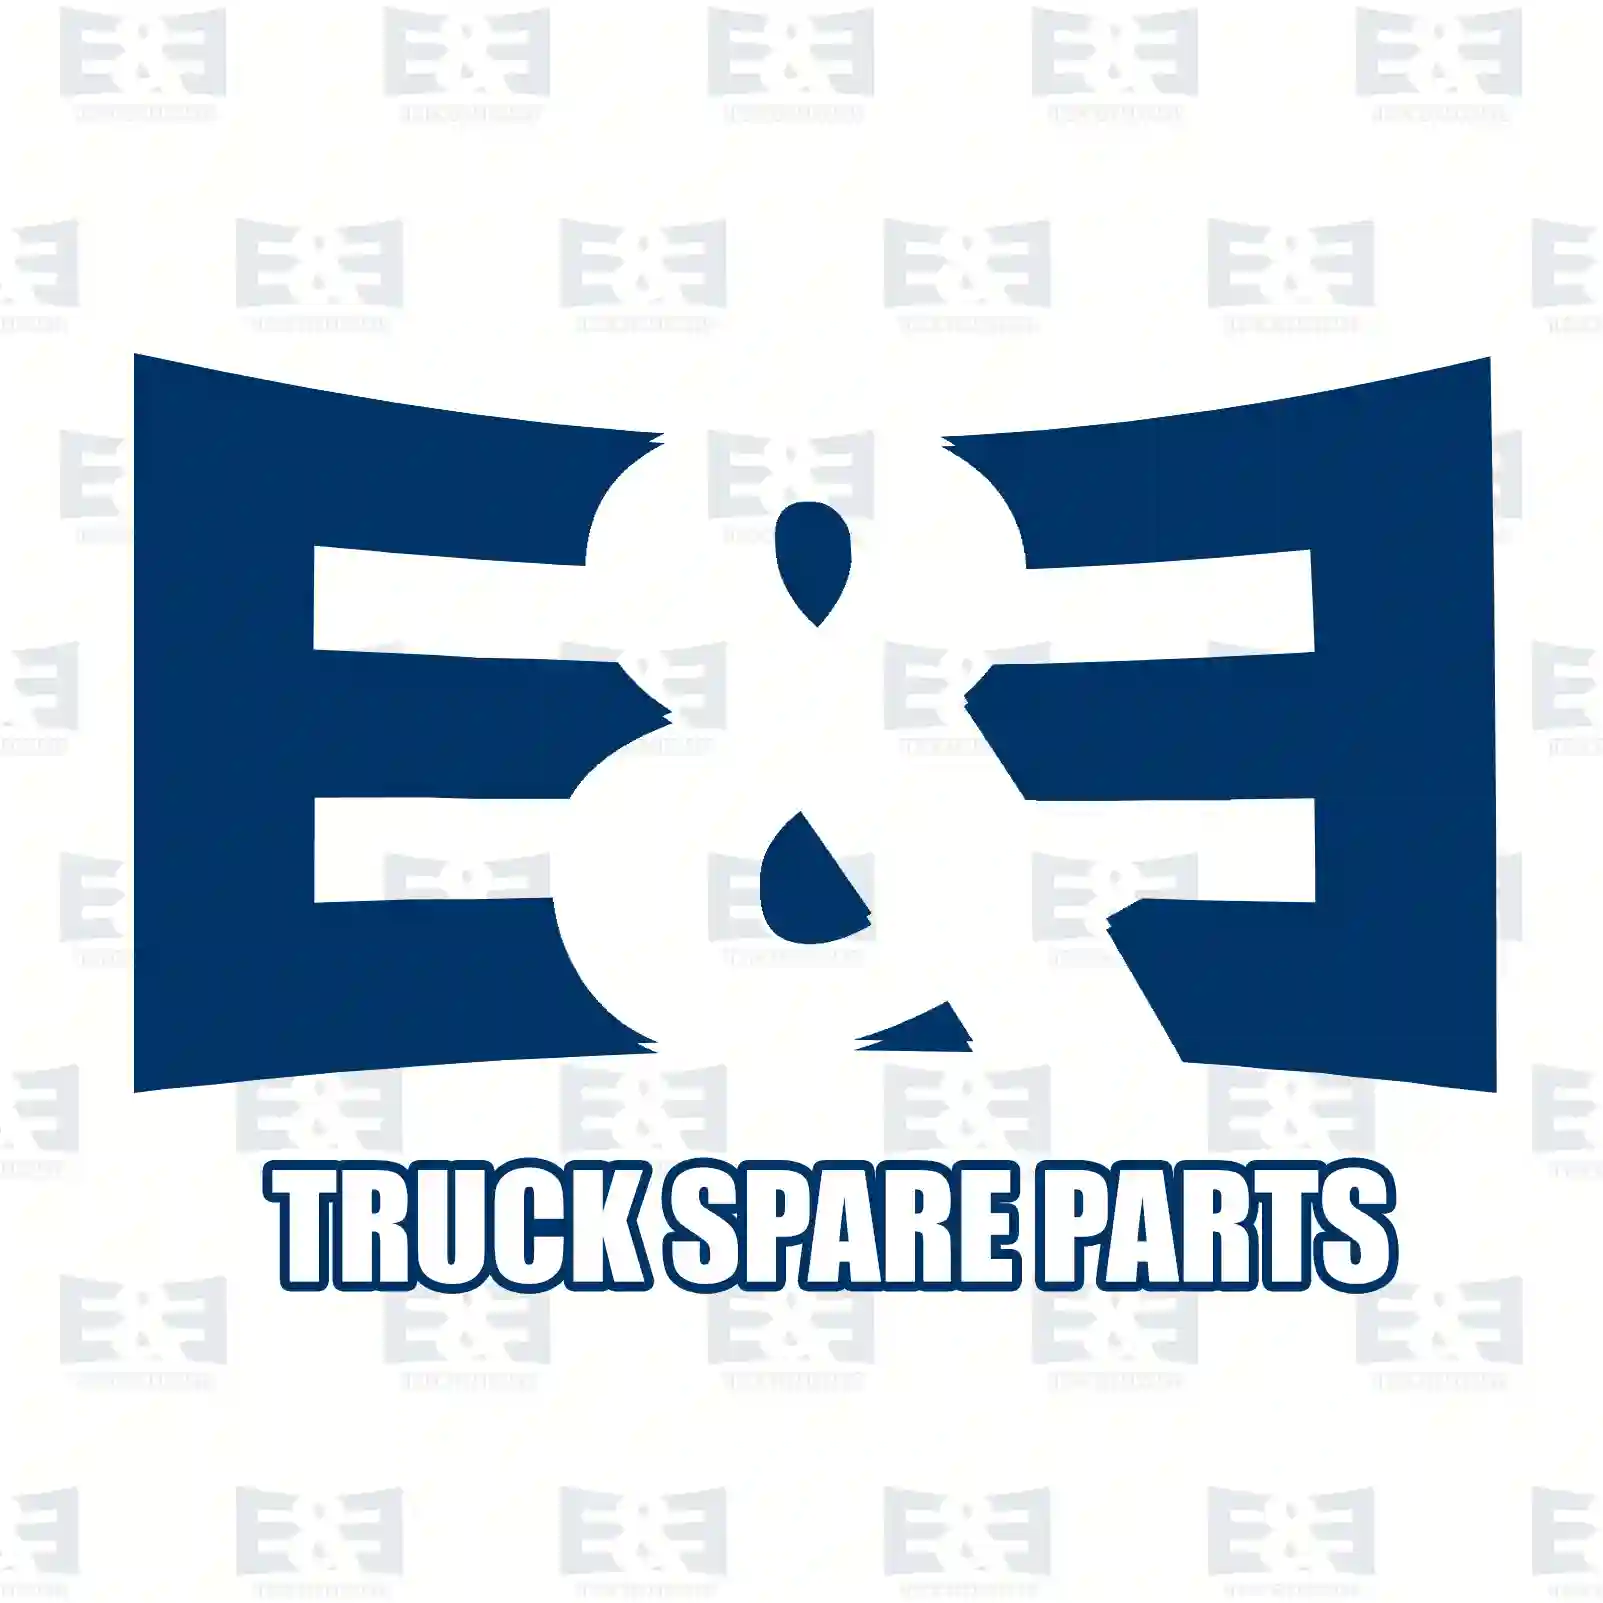 Screw, 2E2270980, 1381746, ZG40274-0008, ||  2E2270980 E&E Truck Spare Parts | Truck Spare Parts, Auotomotive Spare Parts Screw, 2E2270980, 1381746, ZG40274-0008, ||  2E2270980 E&E Truck Spare Parts | Truck Spare Parts, Auotomotive Spare Parts